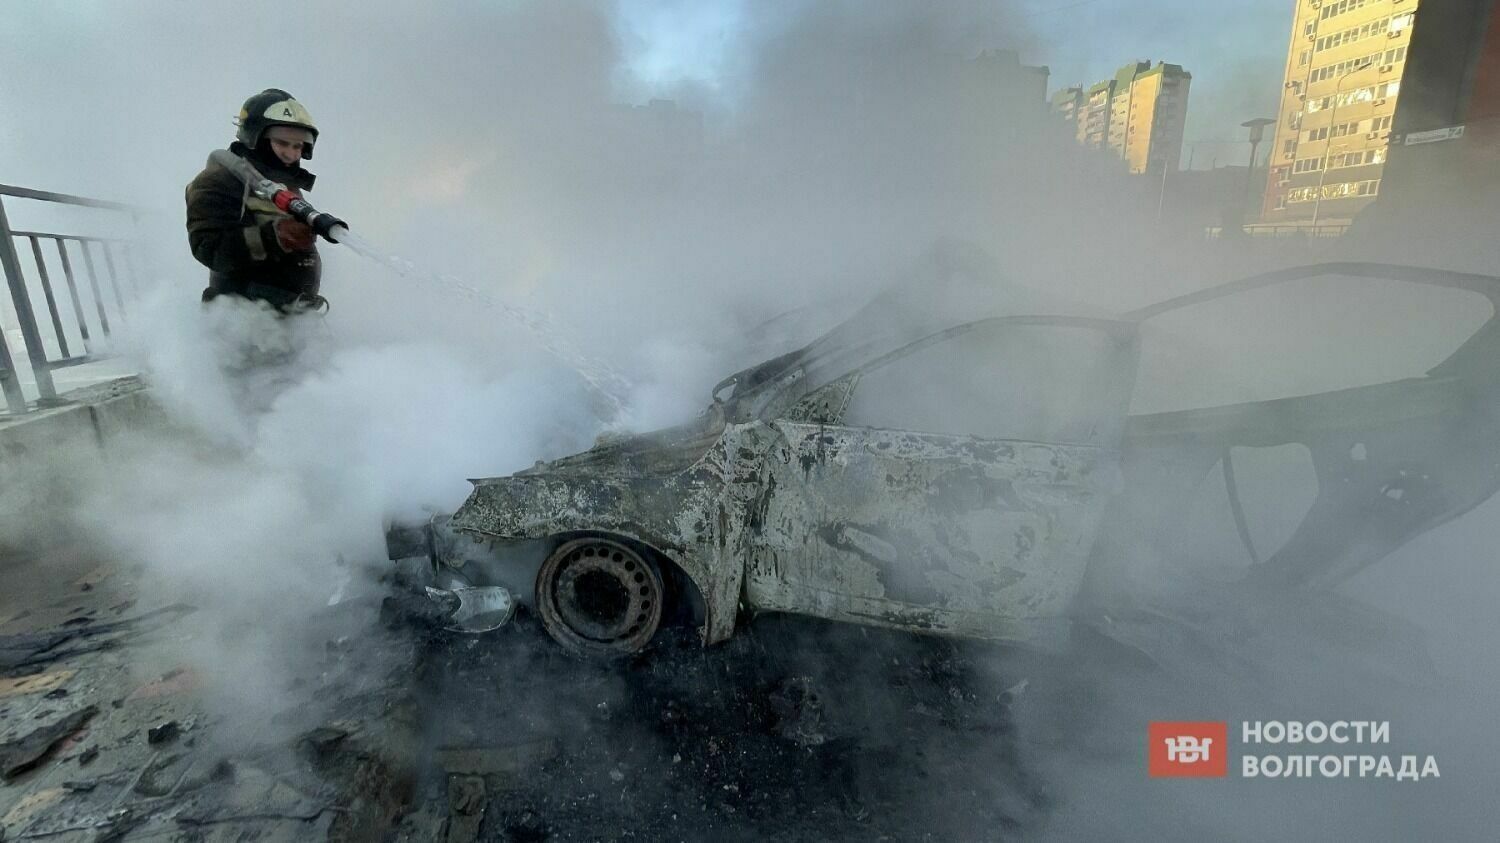 Пострадавшего от взрыва автомобиля волгоградца спасают в реанимации